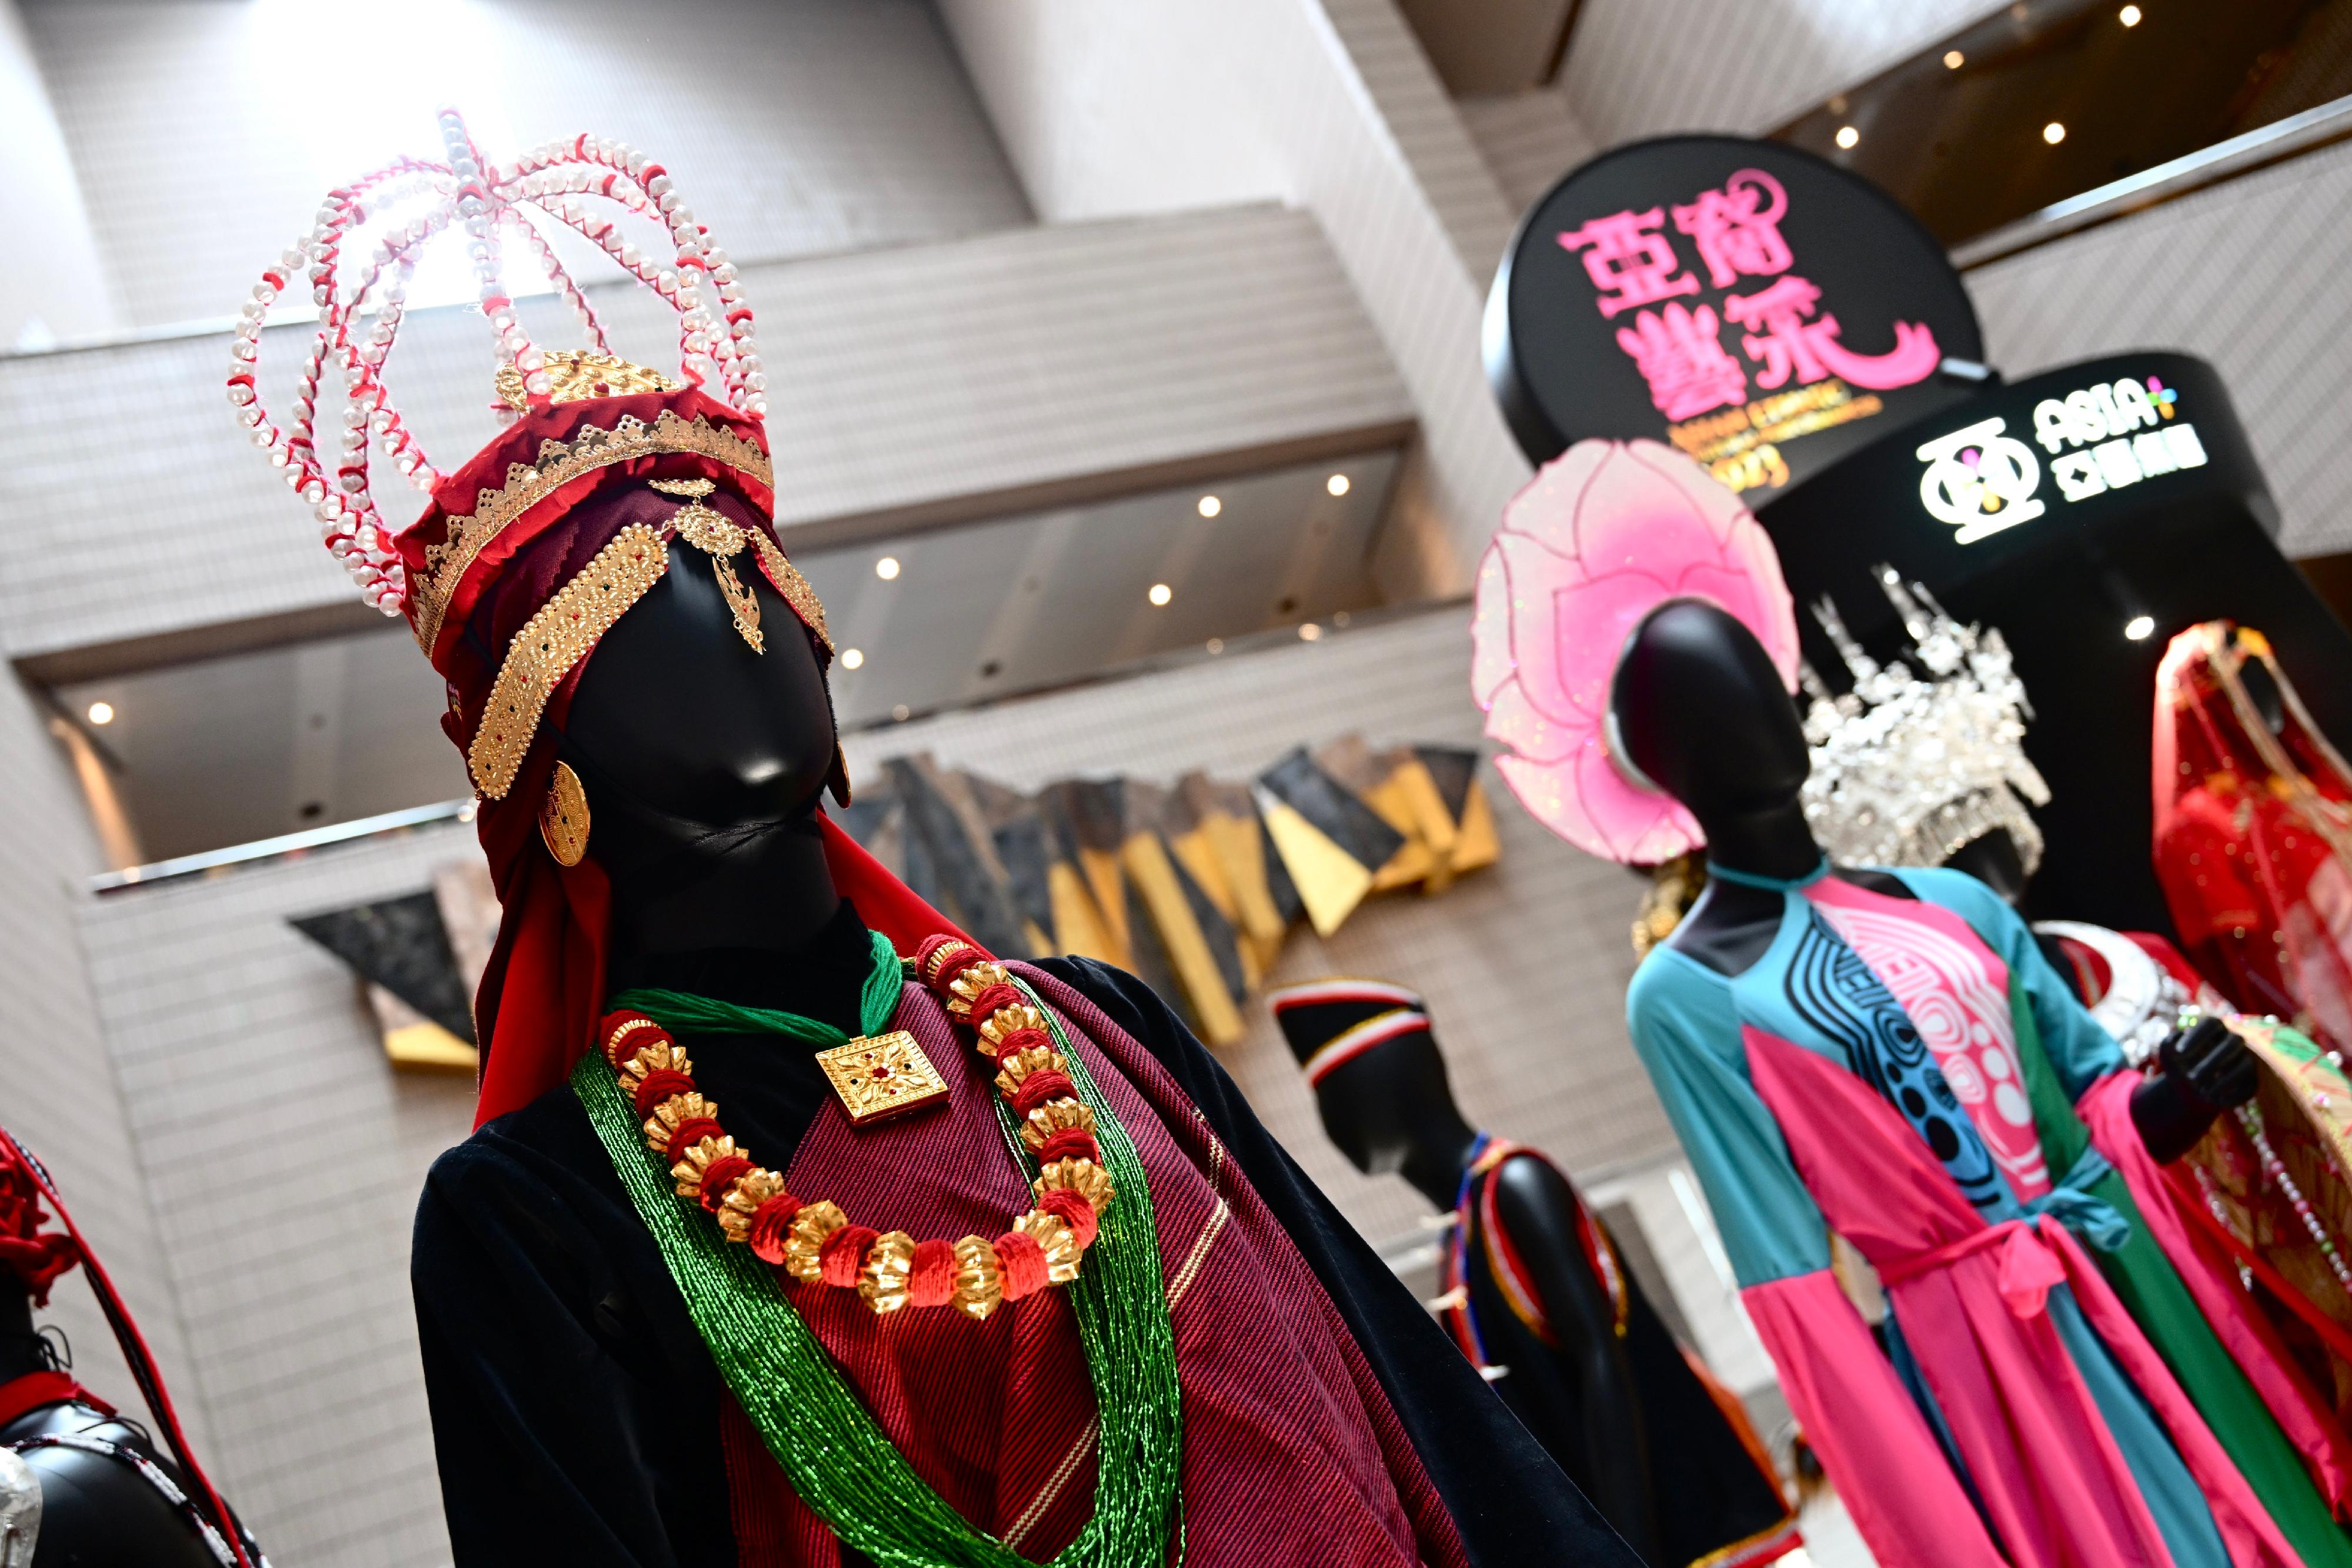 康乐及文化事务署今日（十一月十二日）下午在香港文化中心露天广场举行「亚裔艺采」，其中的「花冕霓裳—民族服装头饰展」在香港文化中心大堂举行至十一月十九日，展示亚洲各地人民在节庆活动、歌舞表演等场合穿着的服装和头饰，缤纷多彩。图示尼泊尔（左）和越南（右）的民族服装头饰。